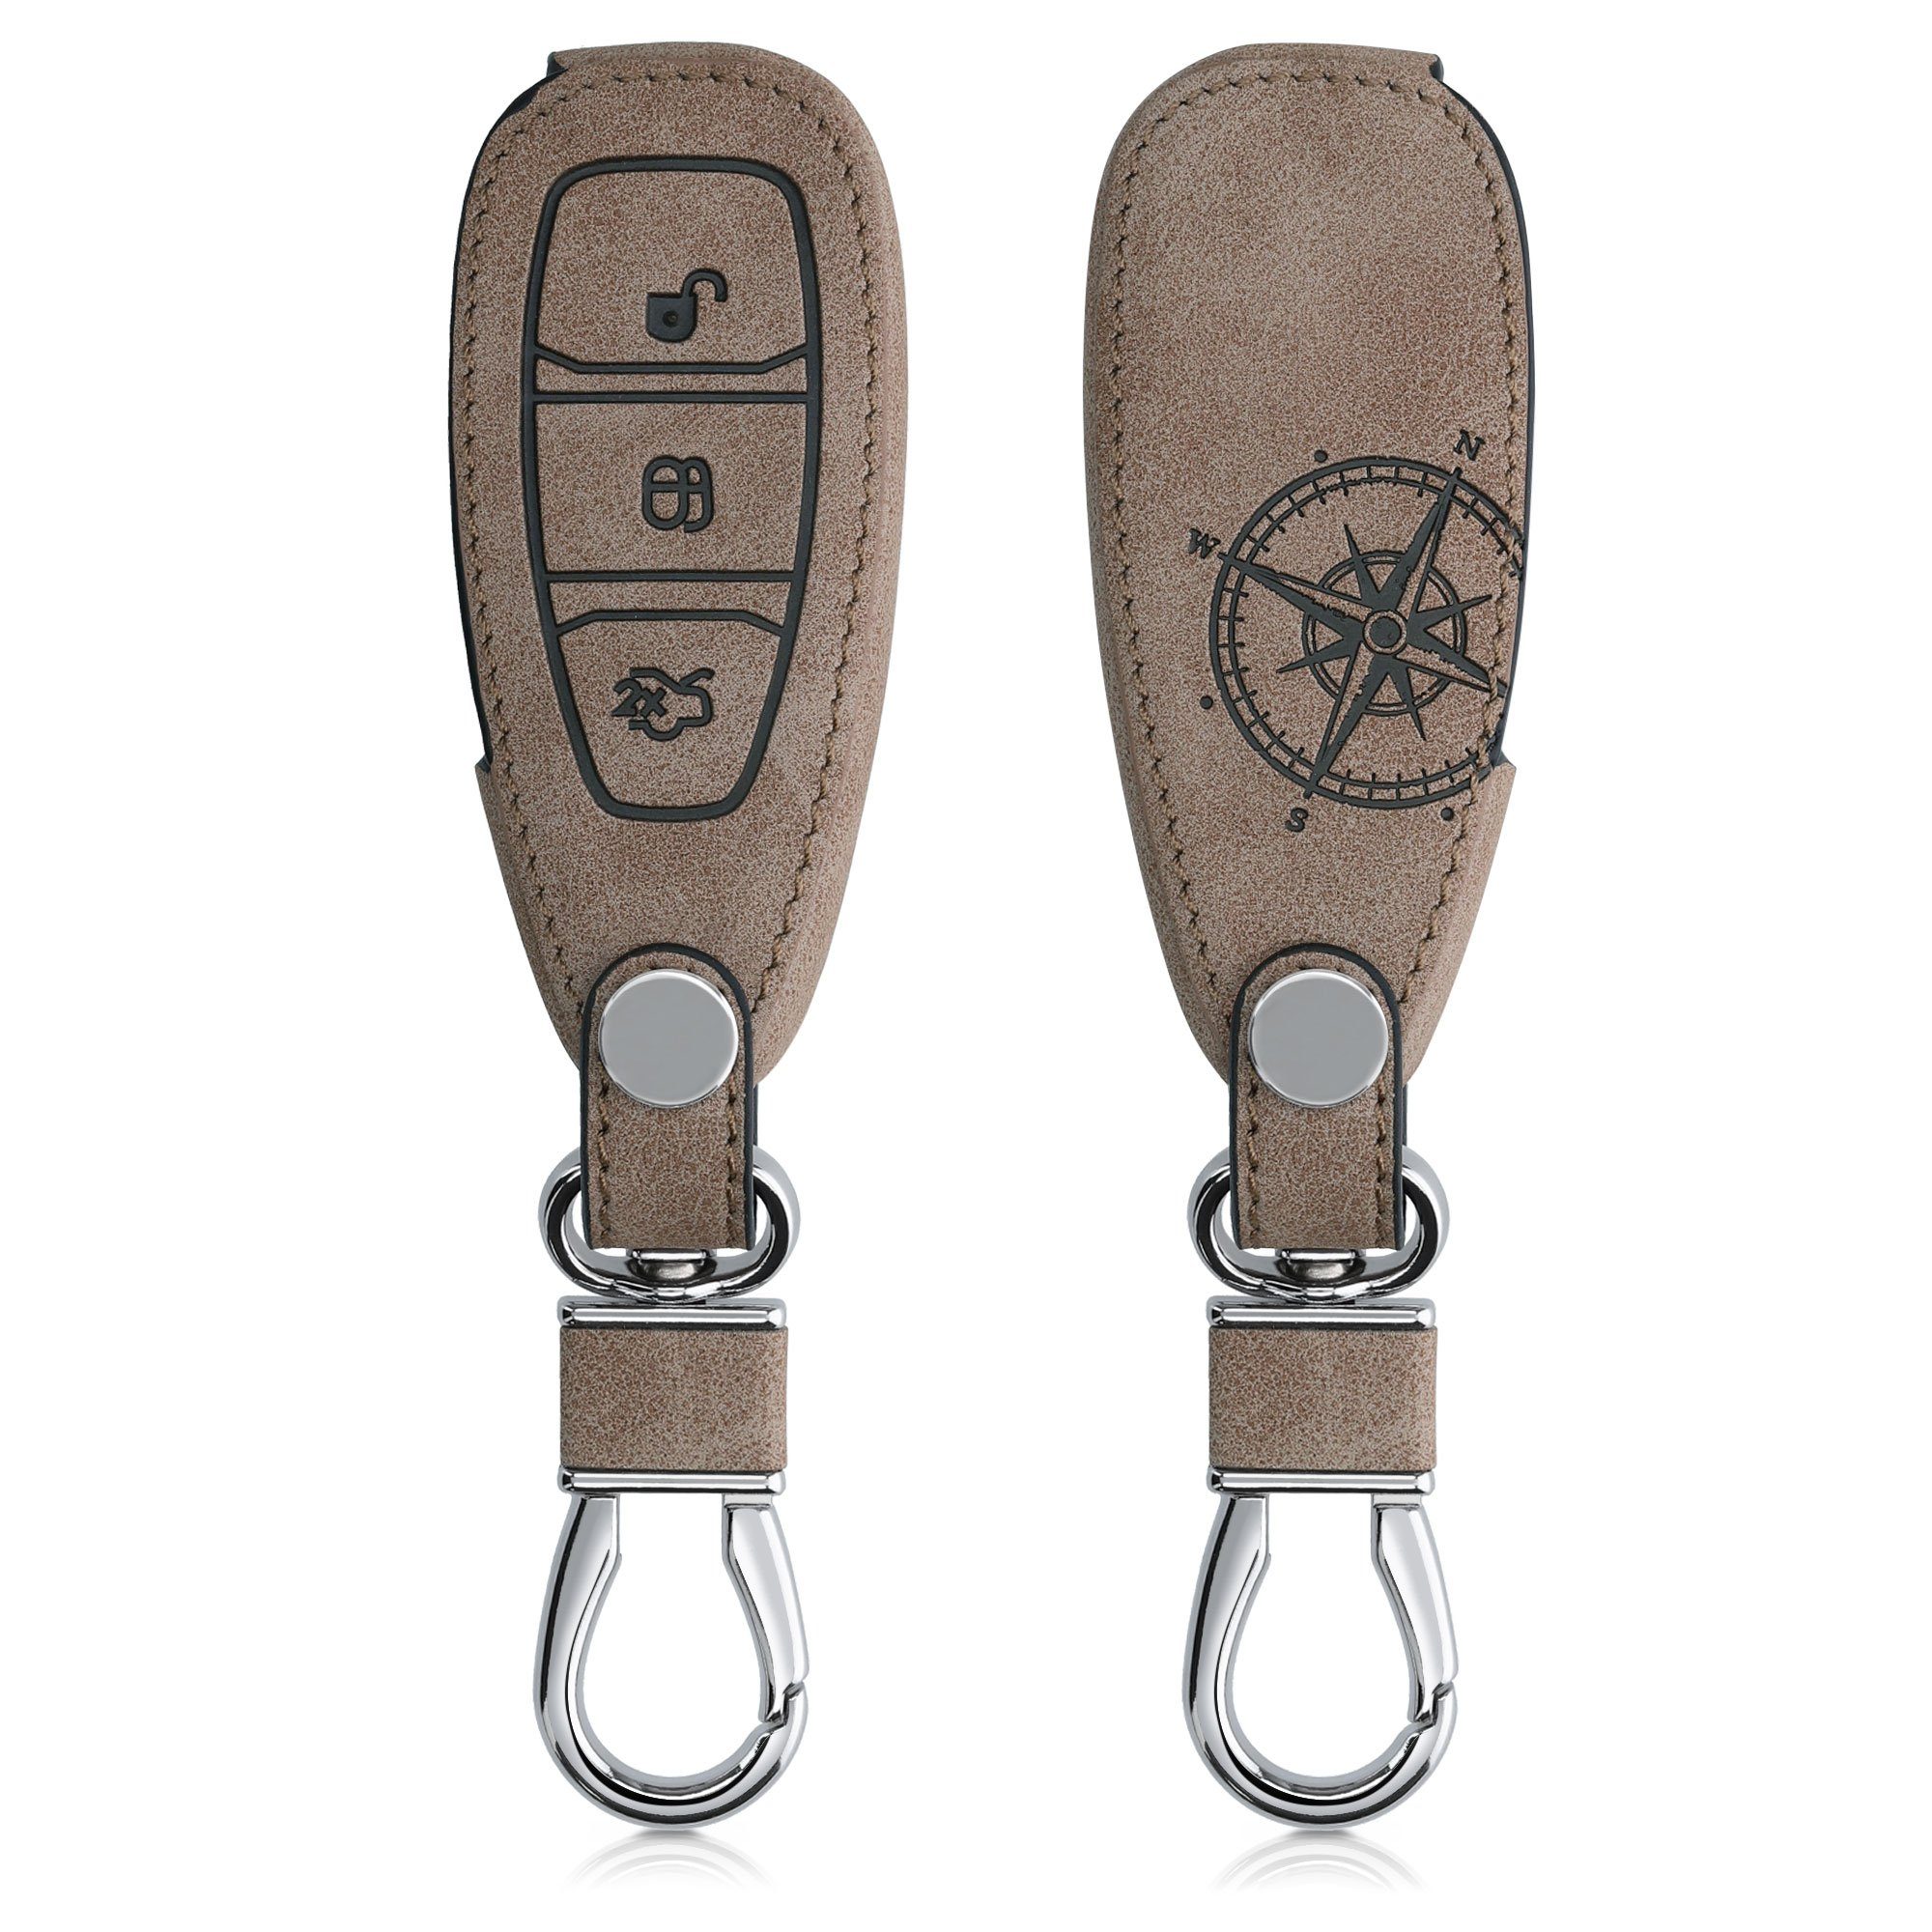 kwmobile Autoschlüssel Hülle kompatibel mit BMW 3-Tasten Funk Autoschlüssel  (nur Keyless Go) - Schlüsselhülle Cover Rot Schwarz